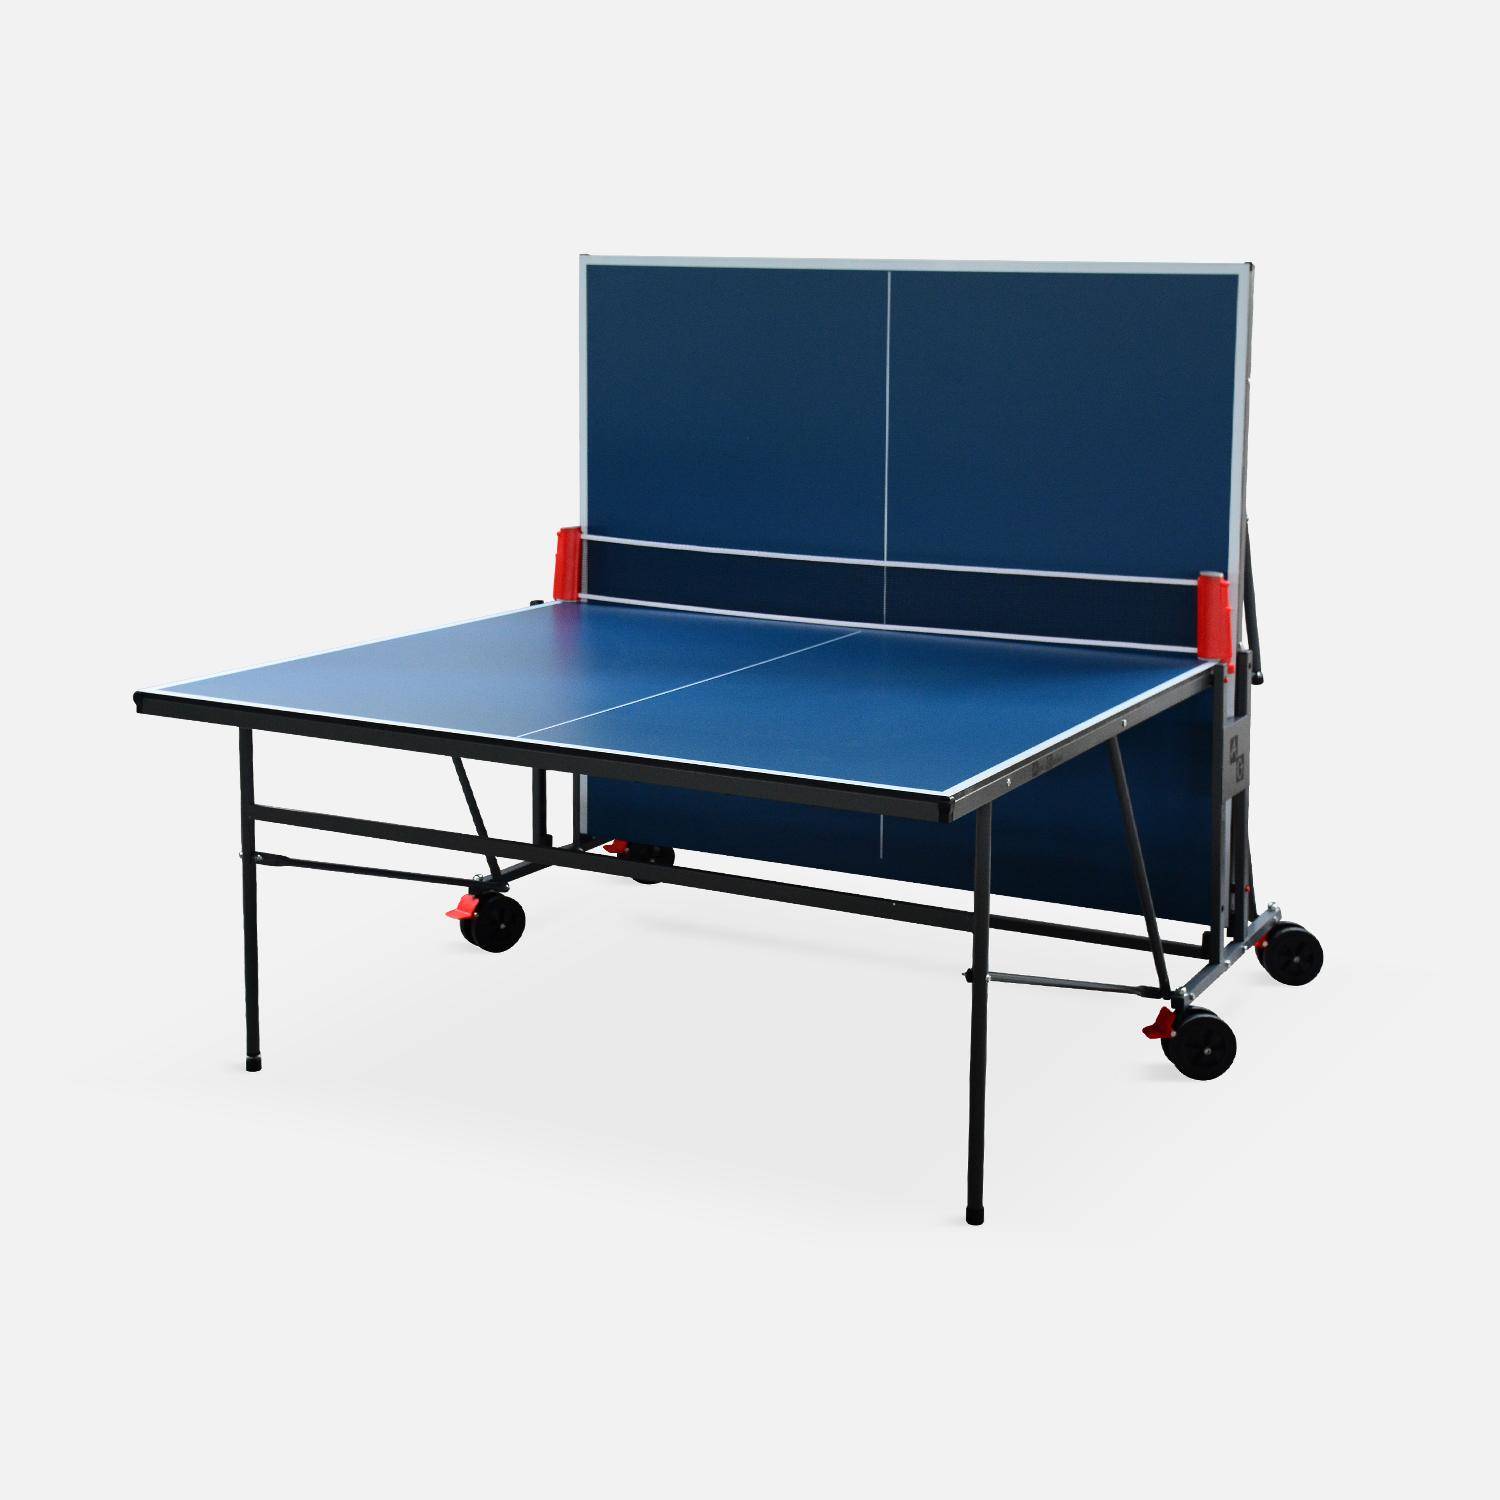 Table de ping pong INDOOR bleue - table pliable avec 2 raquettes et 3 balles, pour utilisation intérieure, sport tennis de table Photo2